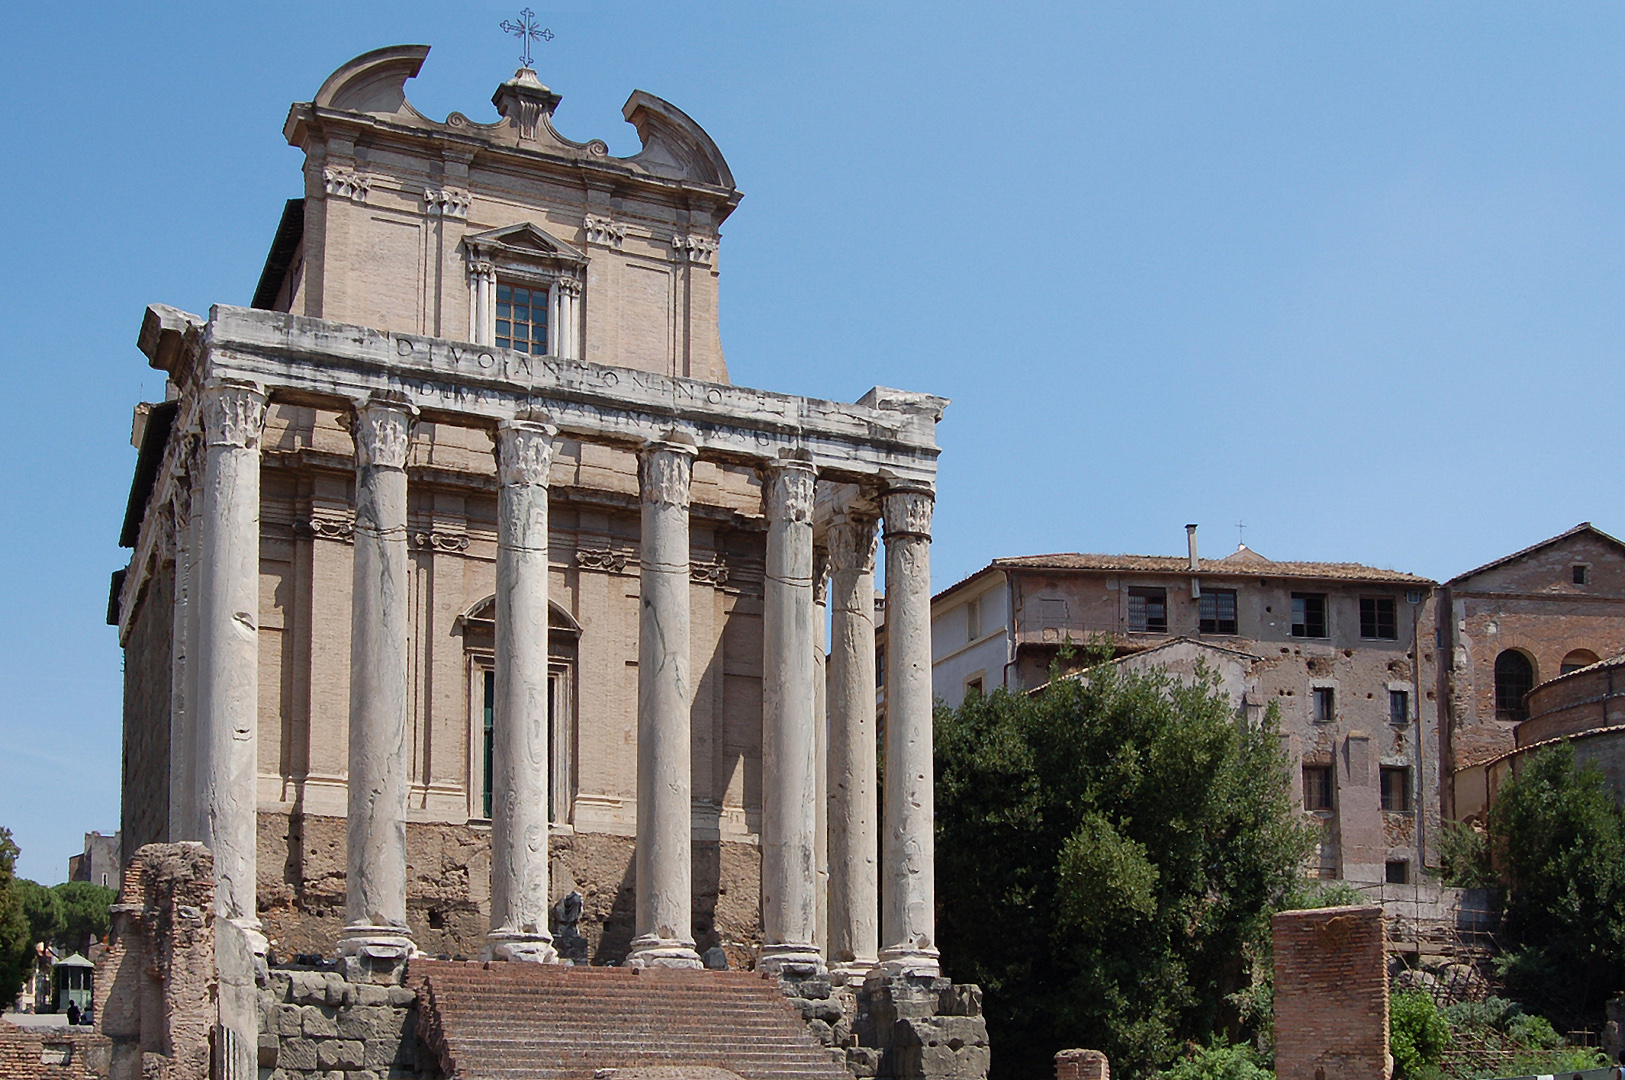 Tempel van Antoninus en Faustina (Rome), Temple of Antoninus and Faustina (Rome)